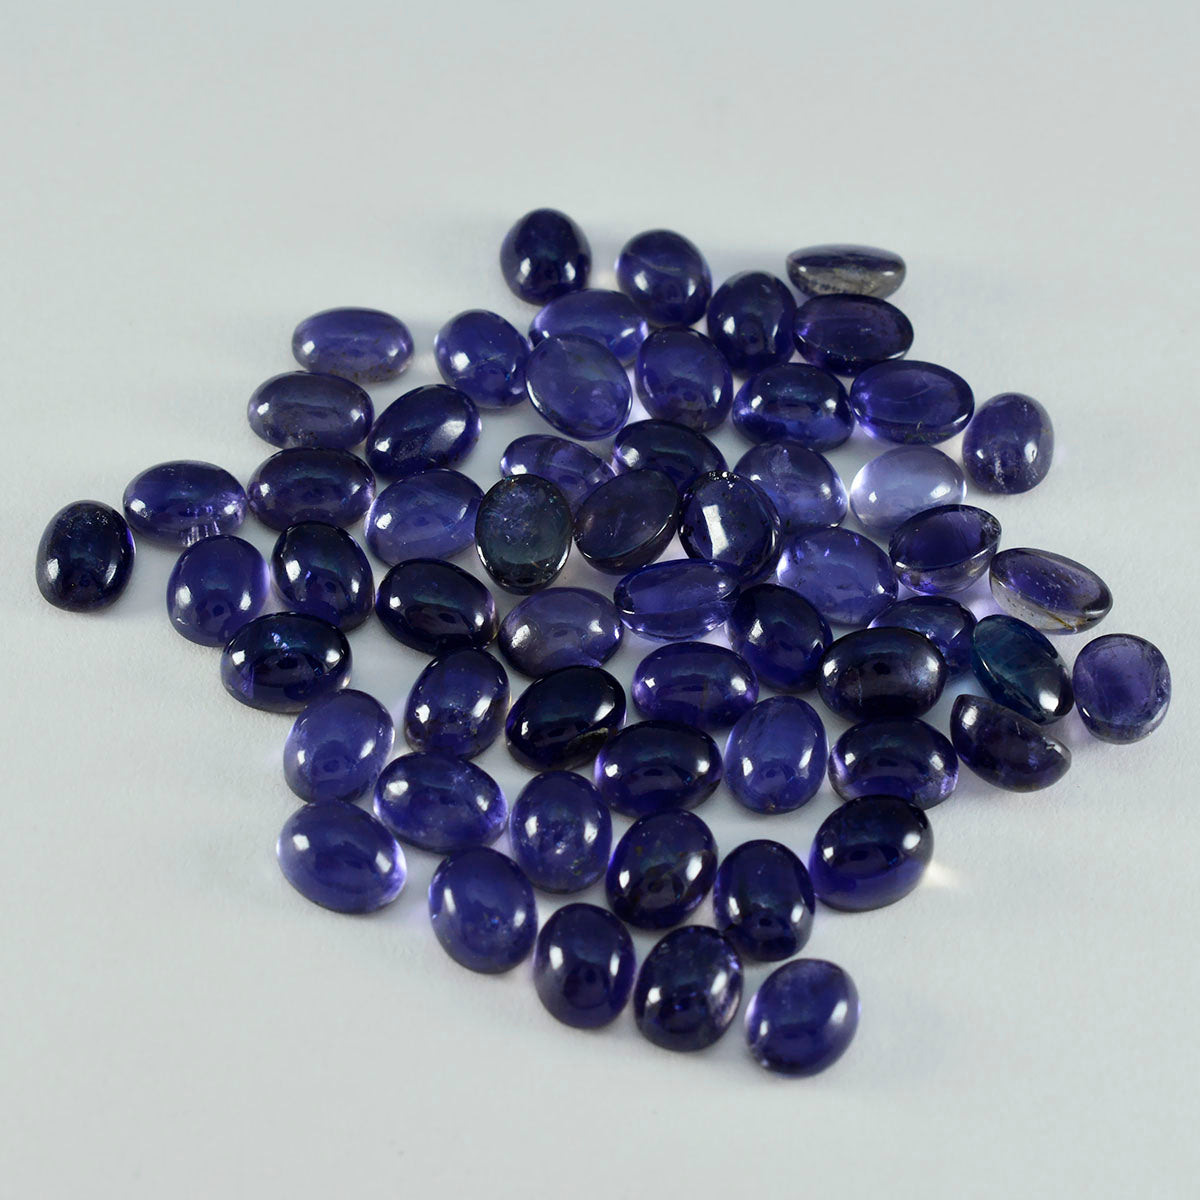 Riyogems 1 pieza cabujón de iolita azul 4x6 mm forma ovalada gema de buena calidad